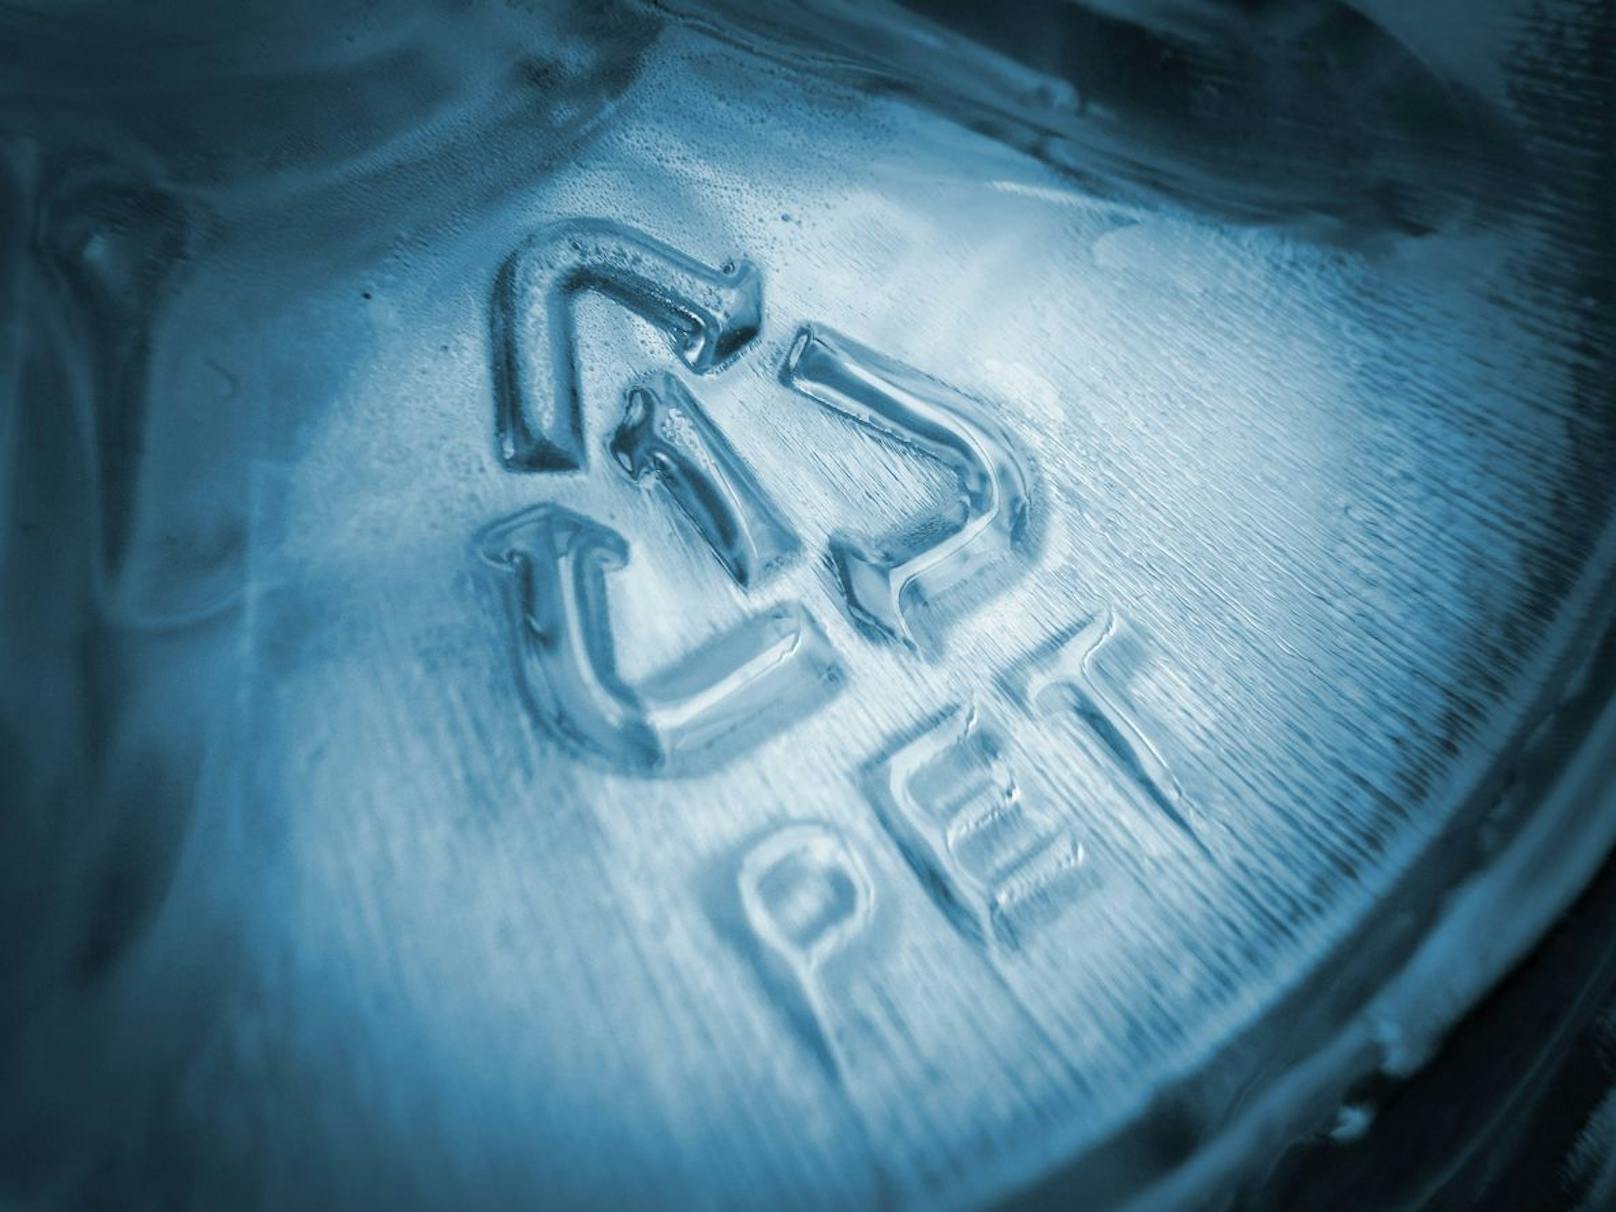 Steht im Recycling-Dreieck eine 2oder eine 5, ist sicher kein BPA enthalten. Produkte mit anderen Nummern können BPA enthalten, haben es aber nicht zwingend enthalten.